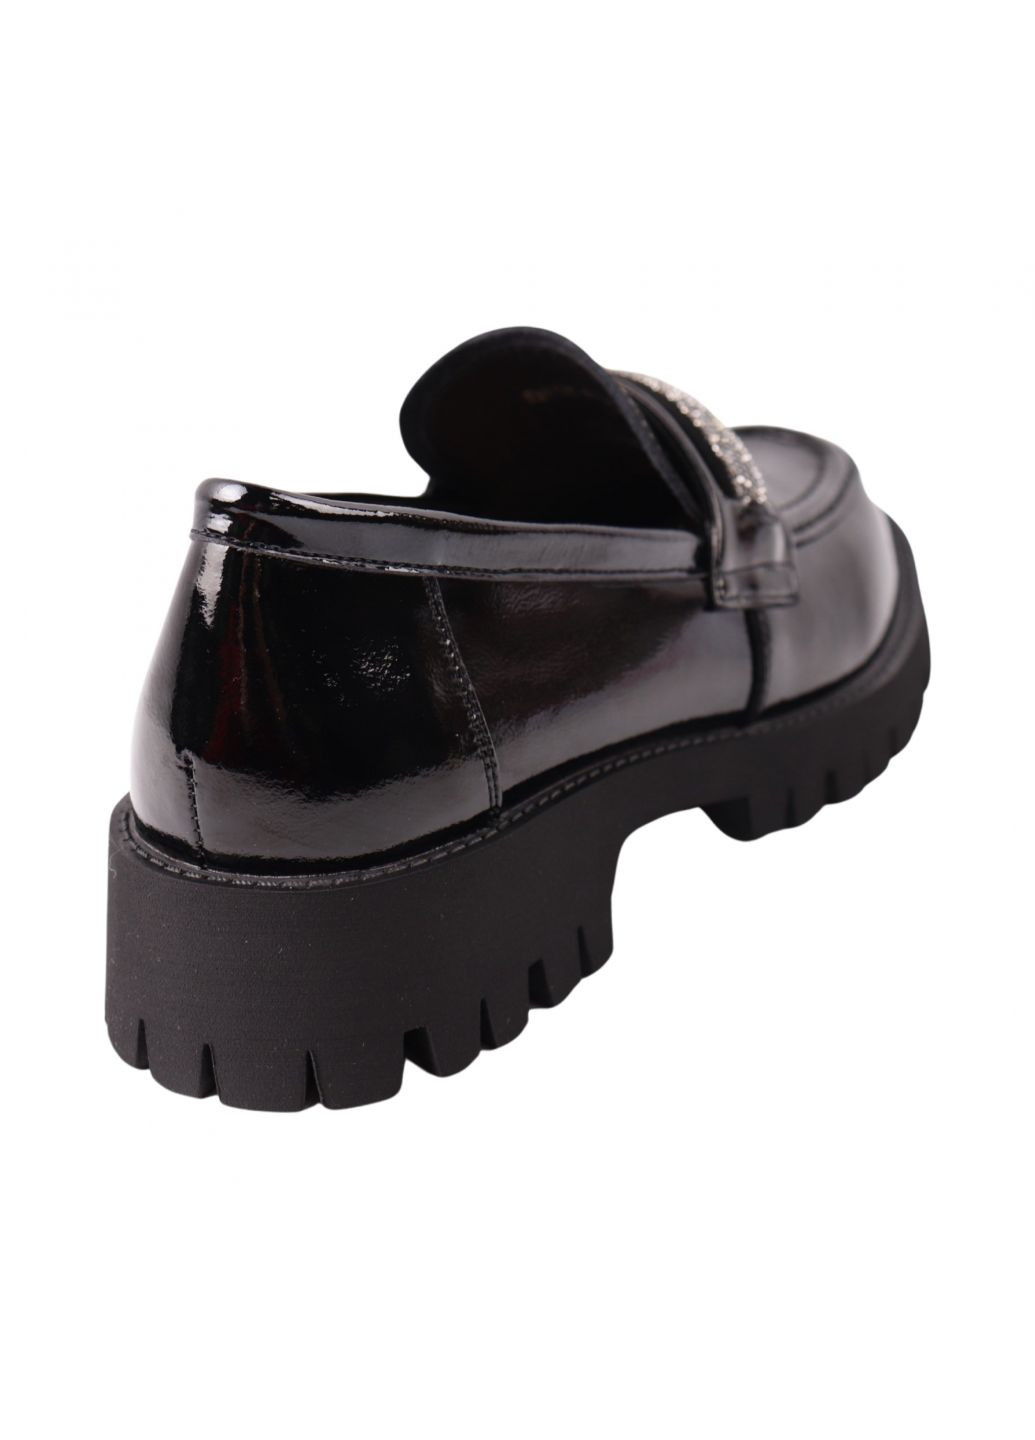 Туфли женские черные натуральная лаковая кожа Melanda